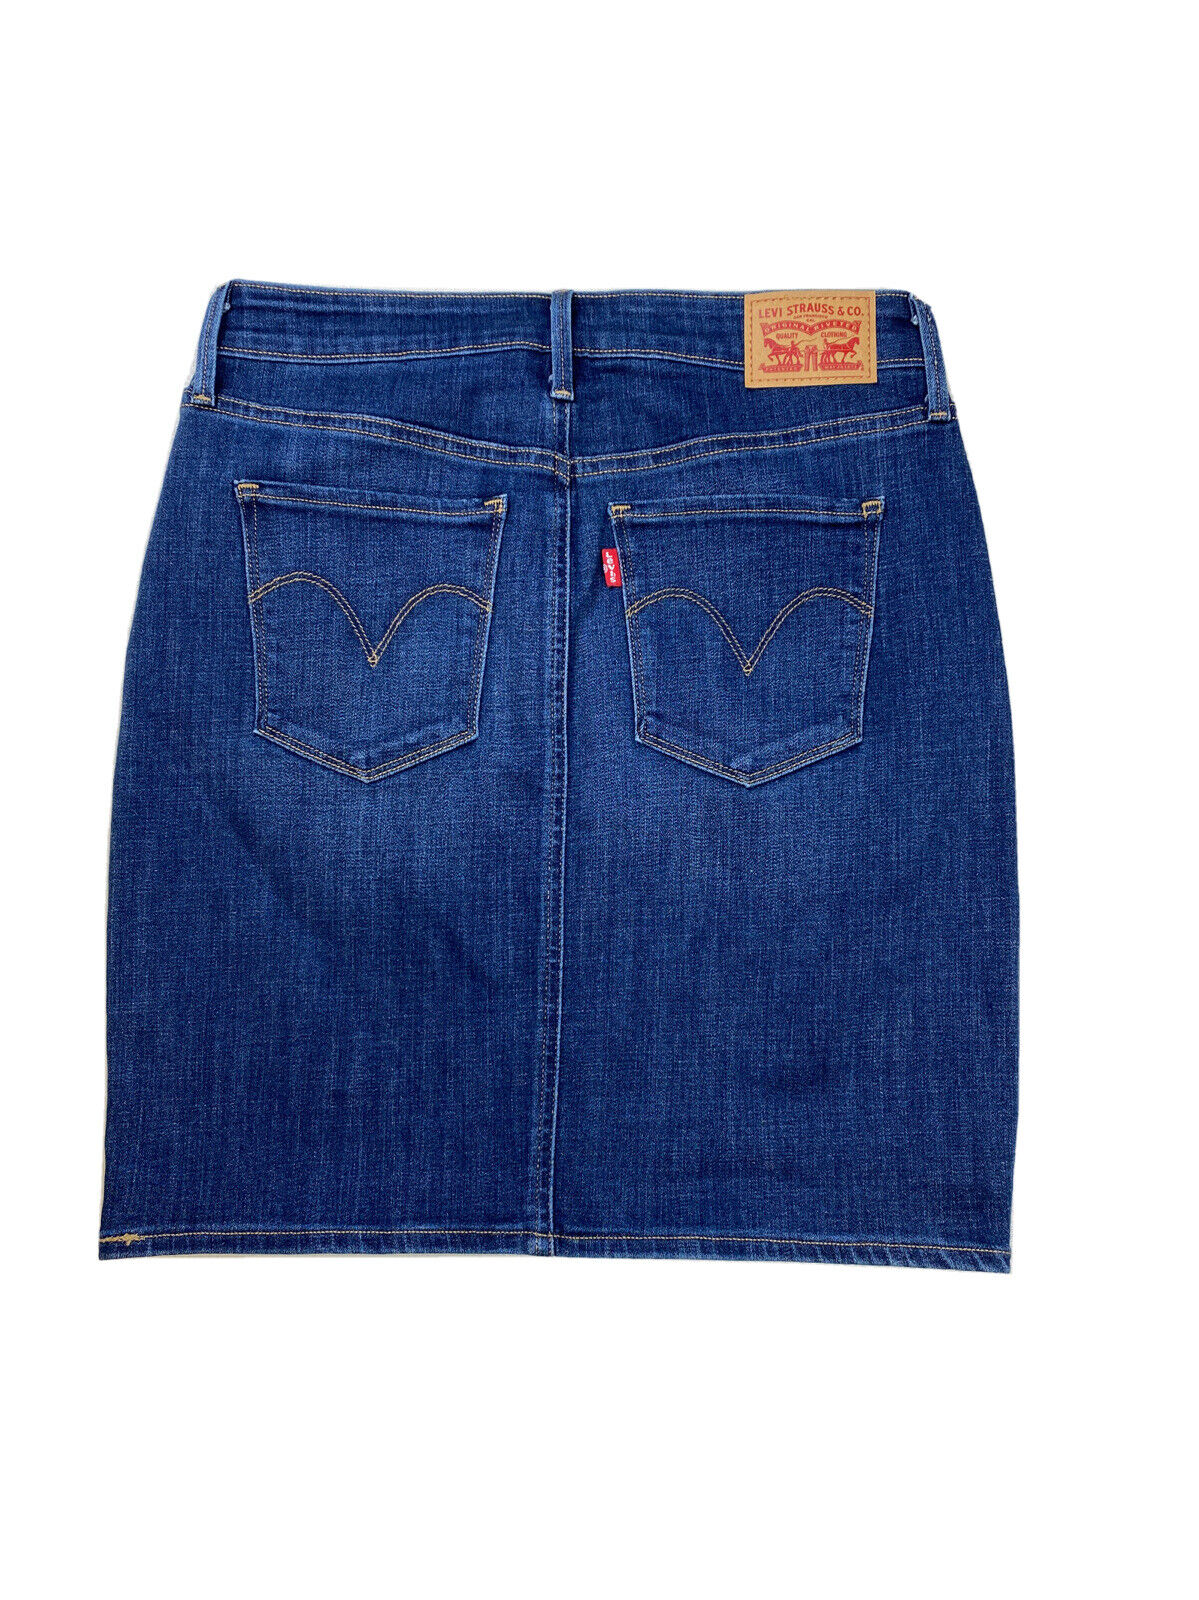 Levi's Women's Dark Wash Blue Denim Stretch Jean Straight Skirt - 26 in